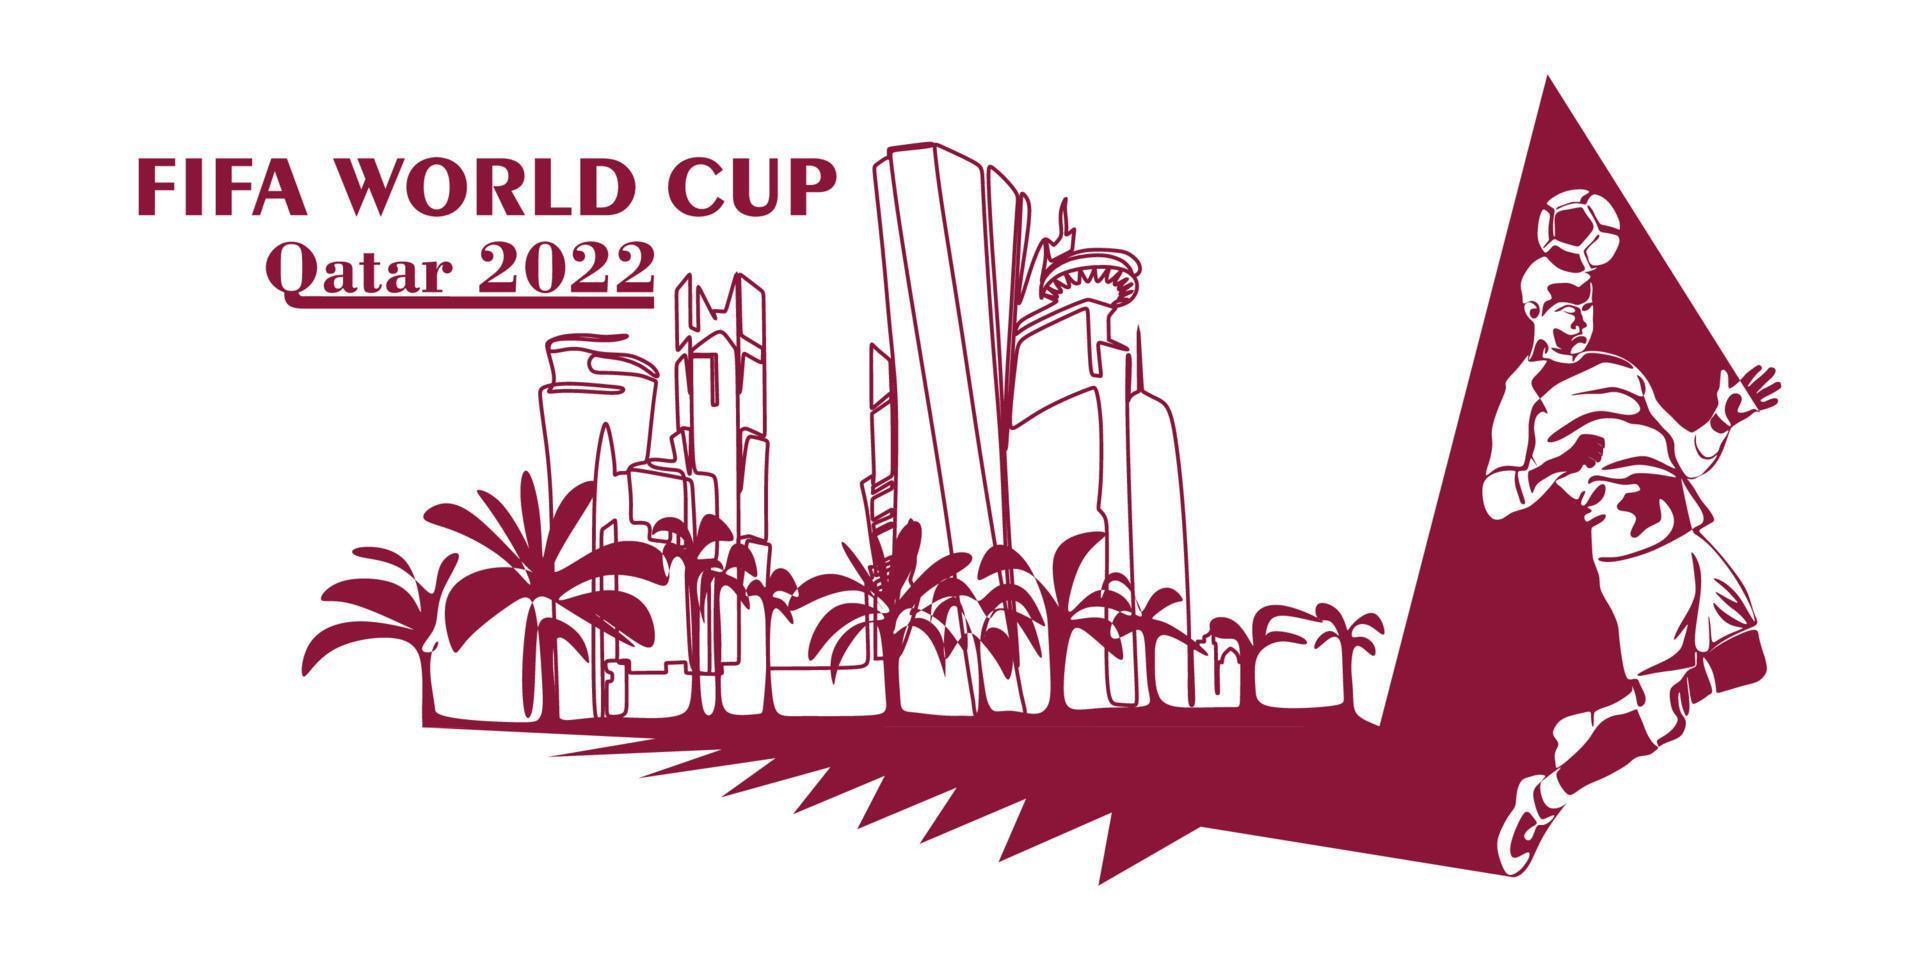 coupe du monde au qatar en bannière 2022. vecteur stylisé isolé illustration moderne de la capitale doha ville avec symbole, couleurs et drapeau